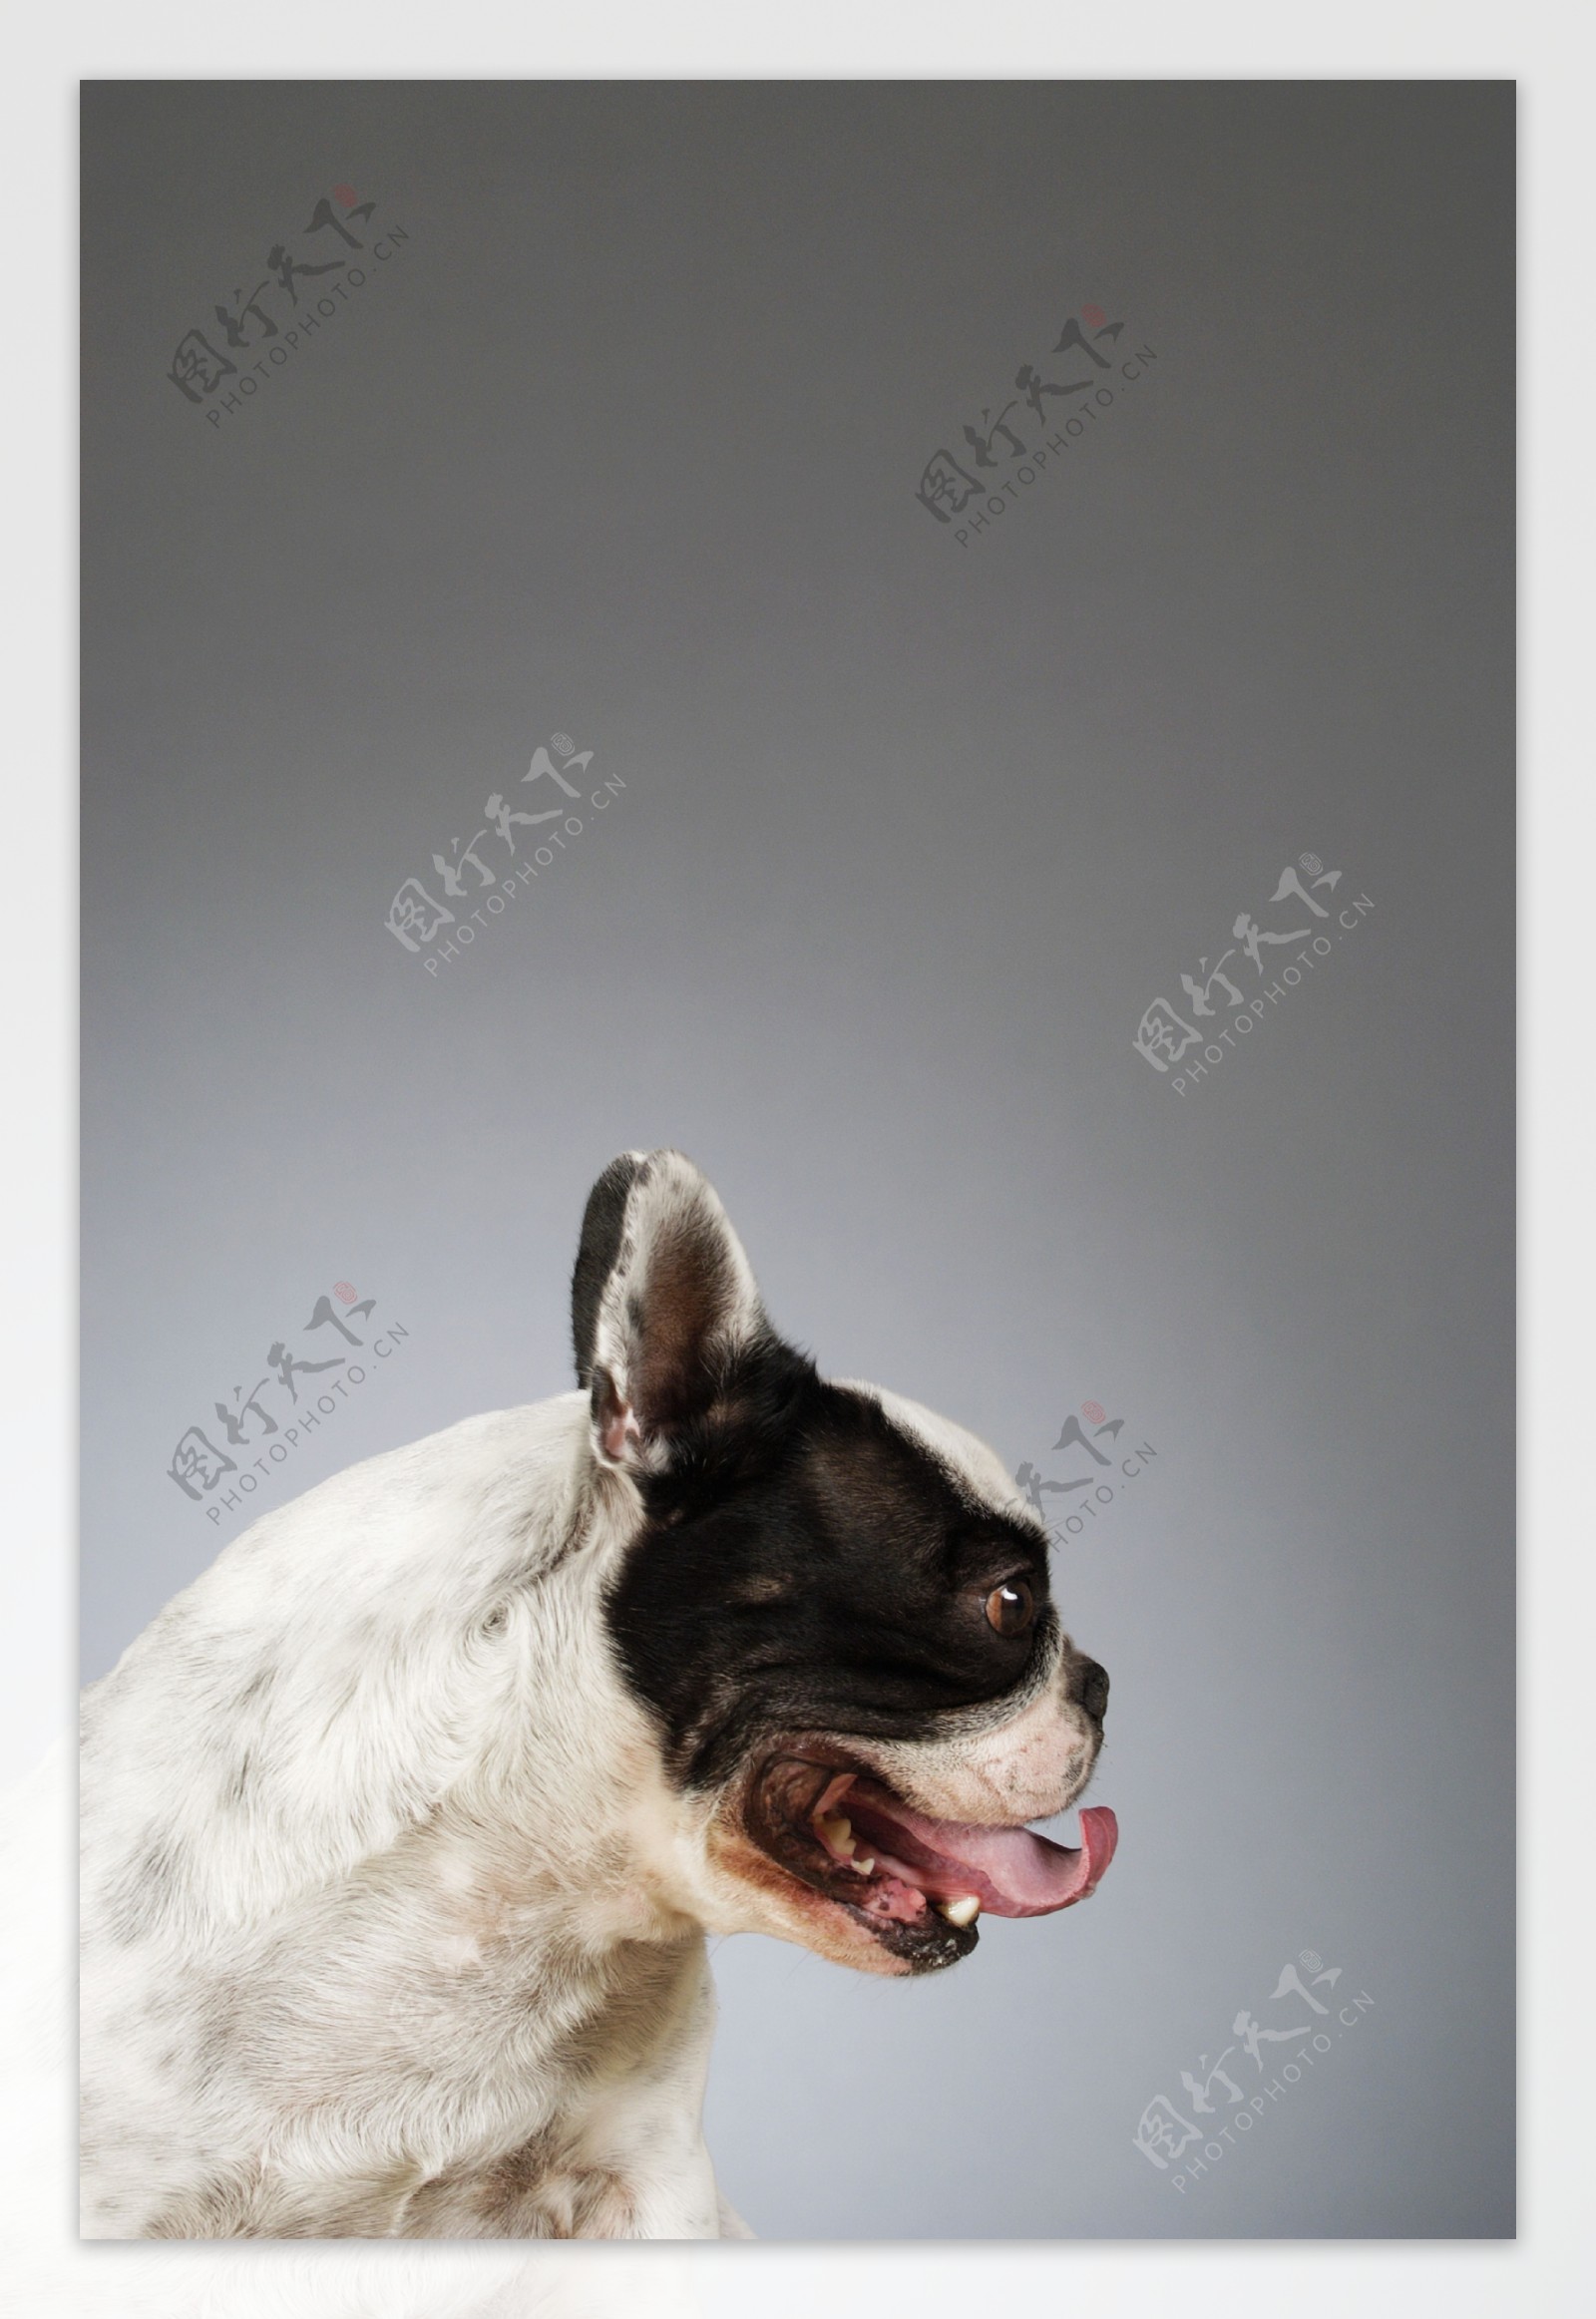 壁纸1024×768世界名狗高清壁纸 第二集 壁纸11壁纸,世界名狗高清壁纸 （壁纸图片-动物壁纸-动物图片素材-桌面壁纸